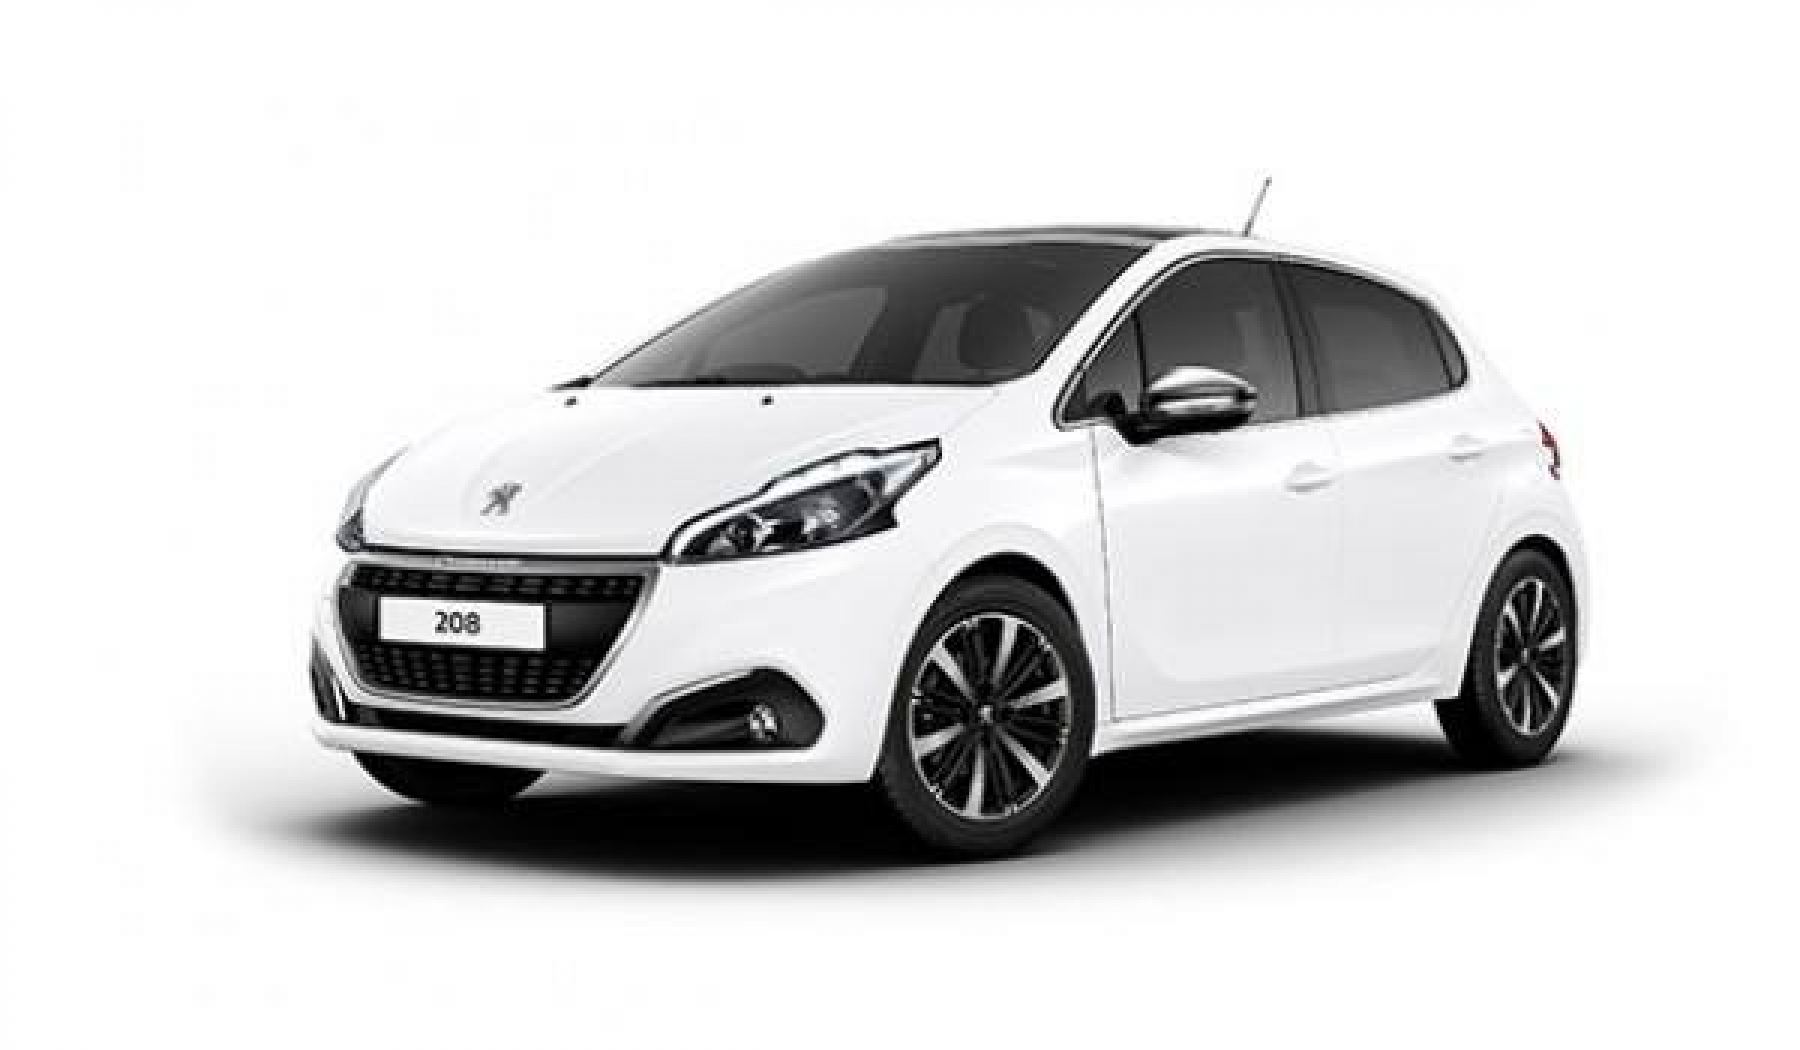 Μάθε για την ειδικά διαμορφωμένη γκάμα αυτοκινήτων Peugeot για τις εταιρικές ενοικιάσεις αυτοκινήτων